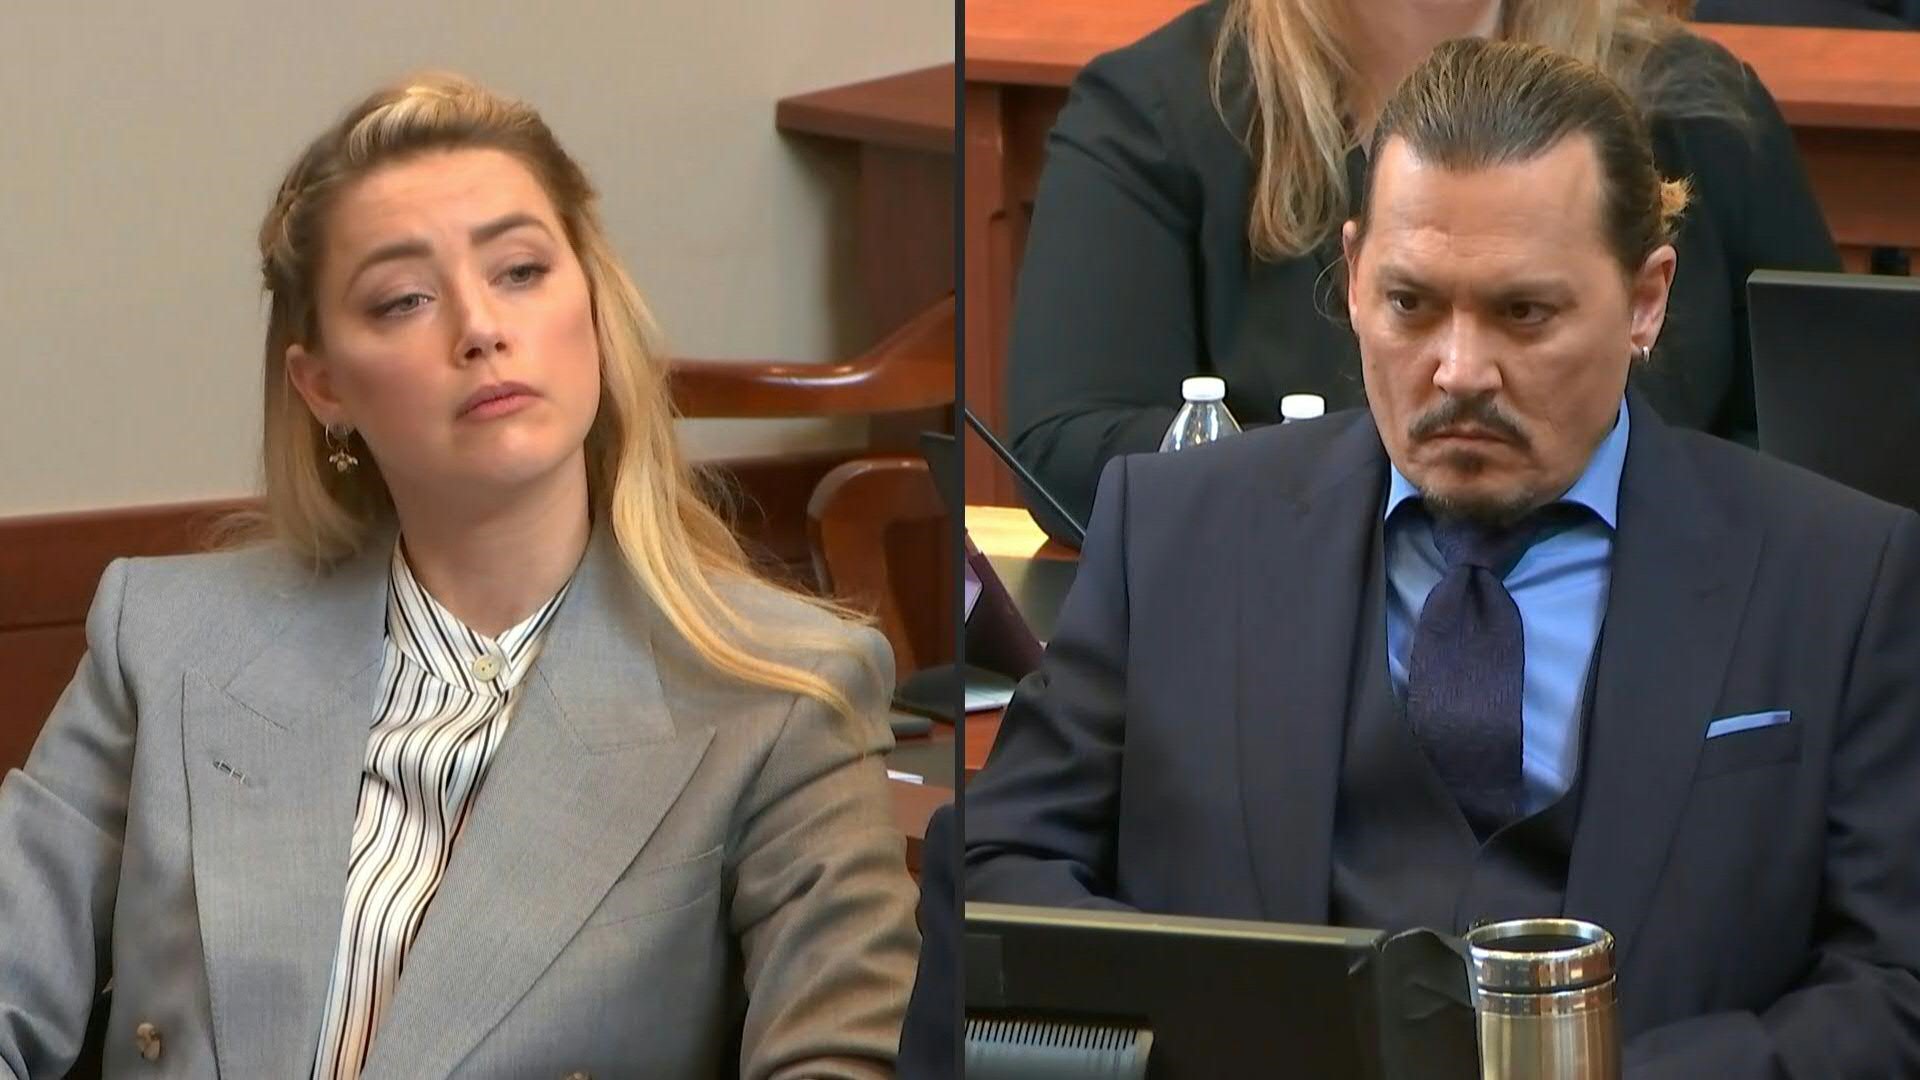 El jurado determinó que Johnny Depp y Amber Heard se difamaron mutuamente